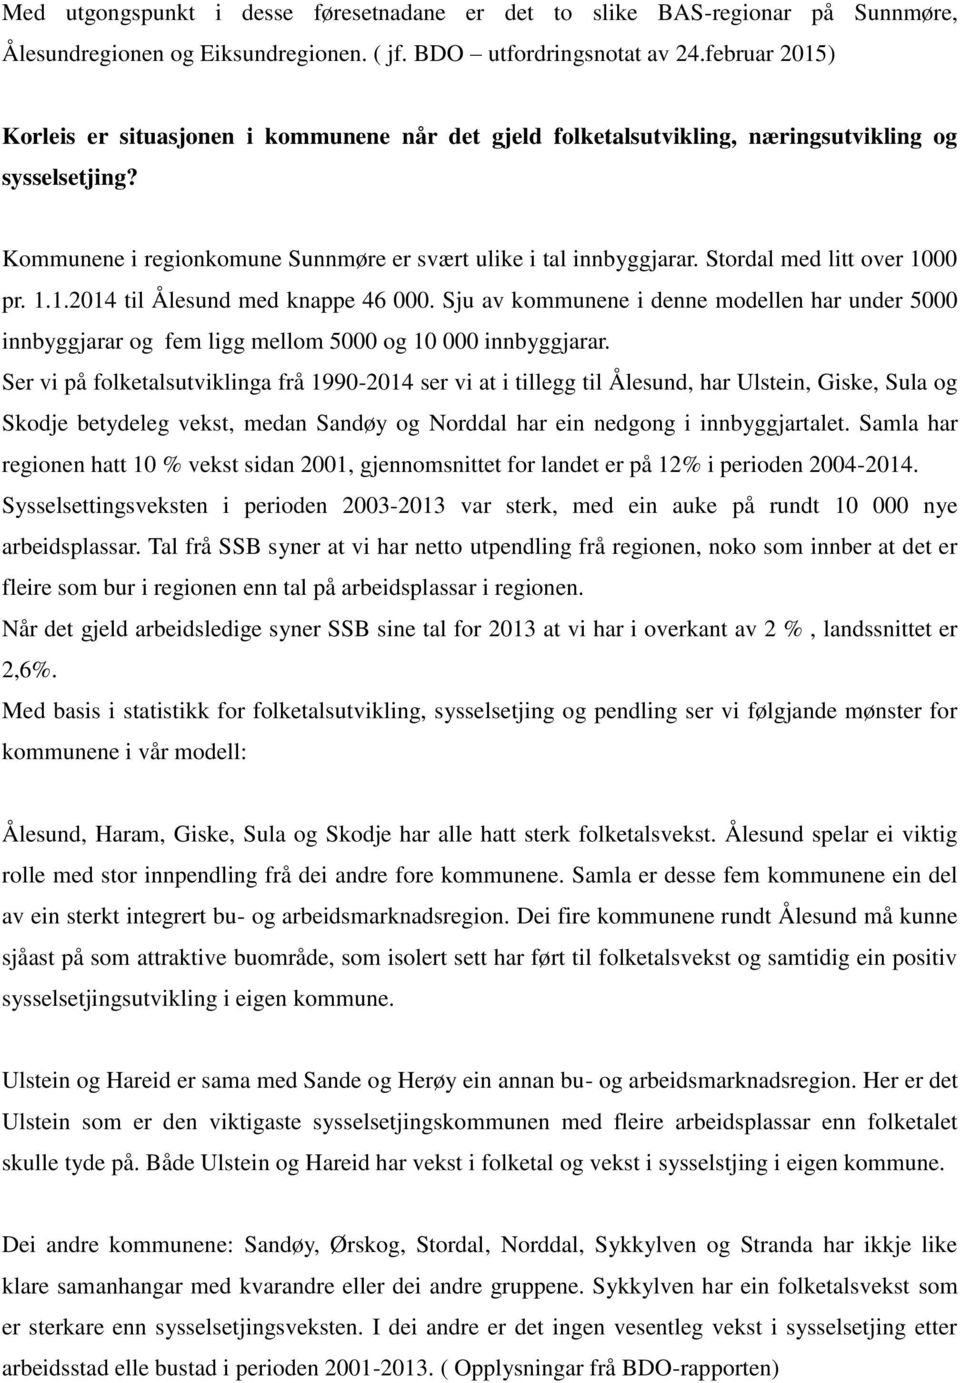 Stordal med litt over 1000 pr. 1.1.2014 til Ålesund med knappe 46 000. Sju av kommunene i denne modellen har under 5000 innbyggjarar og fem ligg mellom 5000 og 10 000 innbyggjarar.